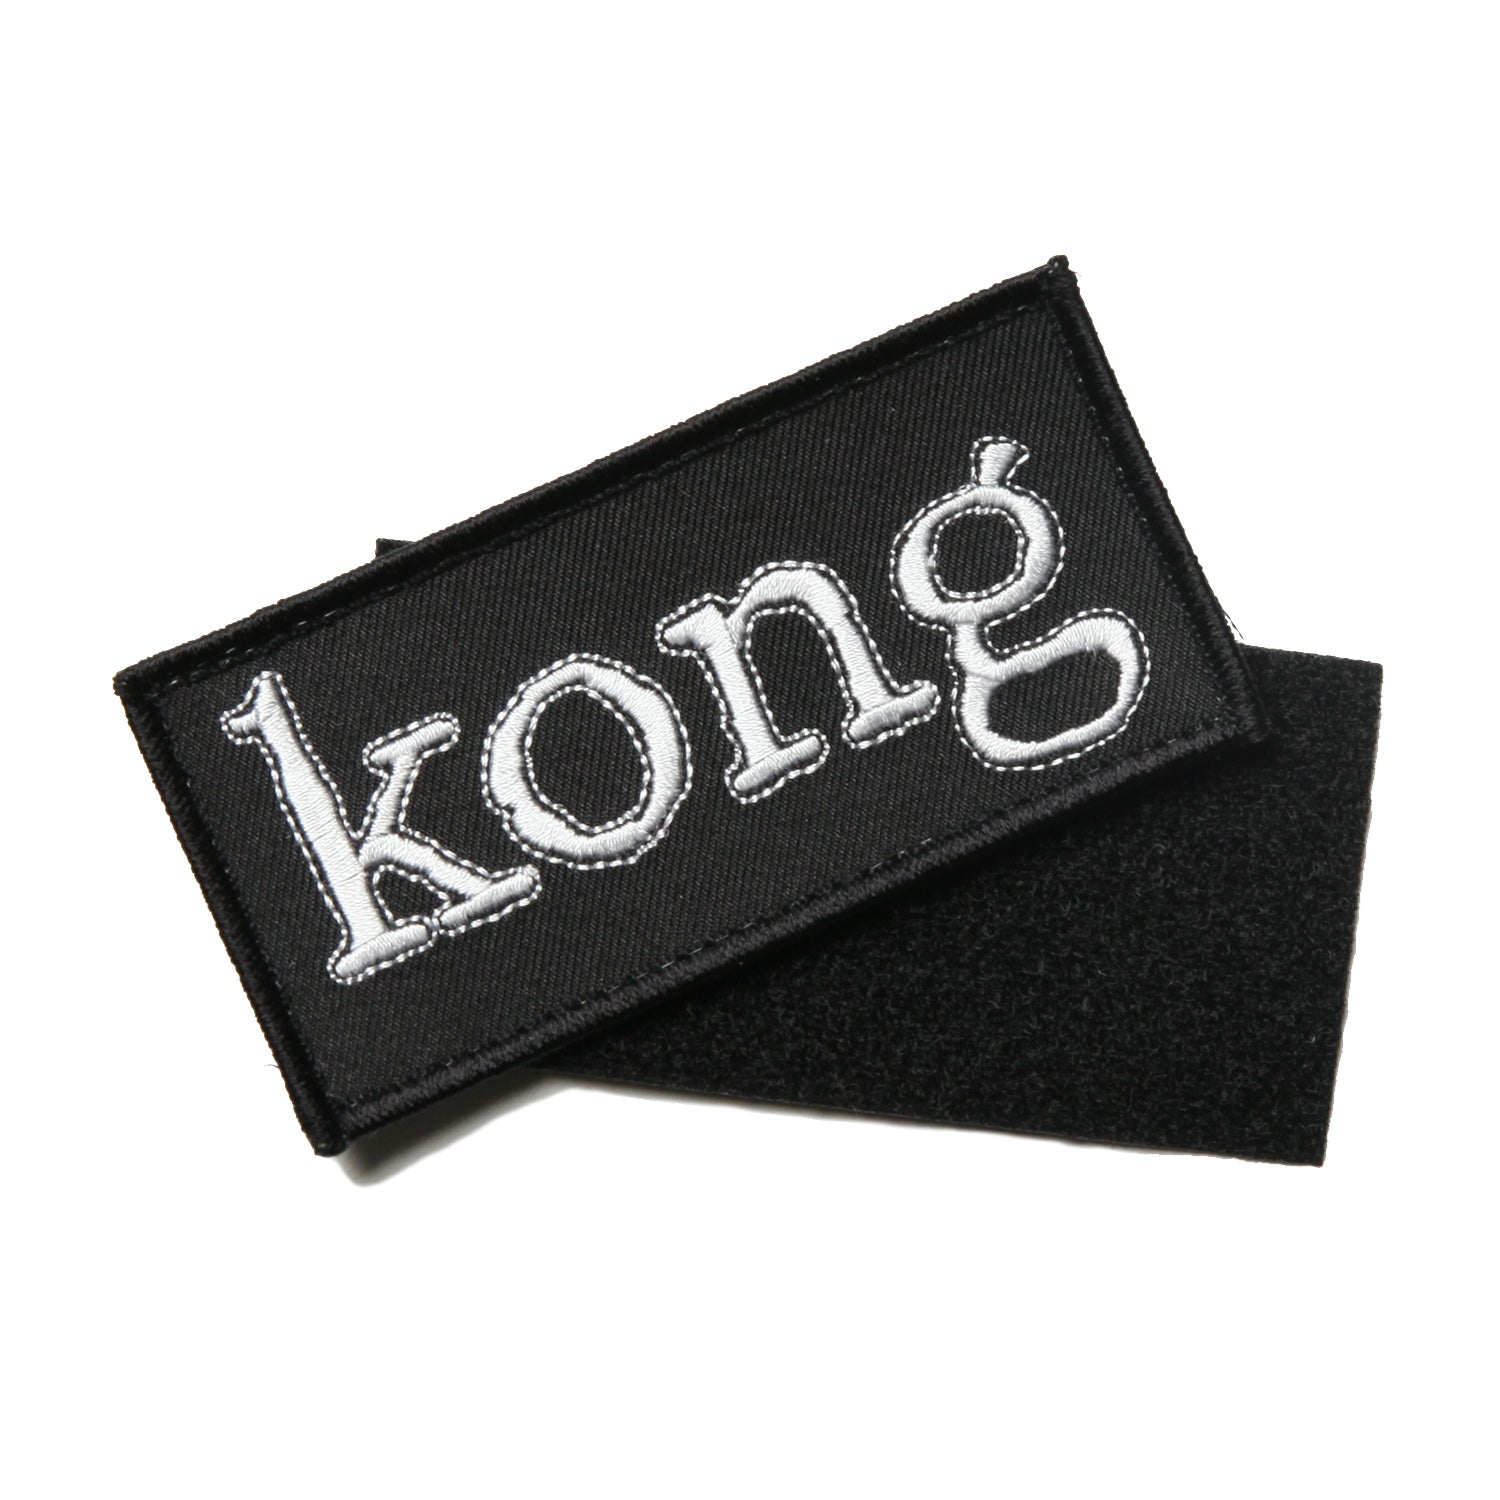 Kong Box Logo Velcro Patch Black